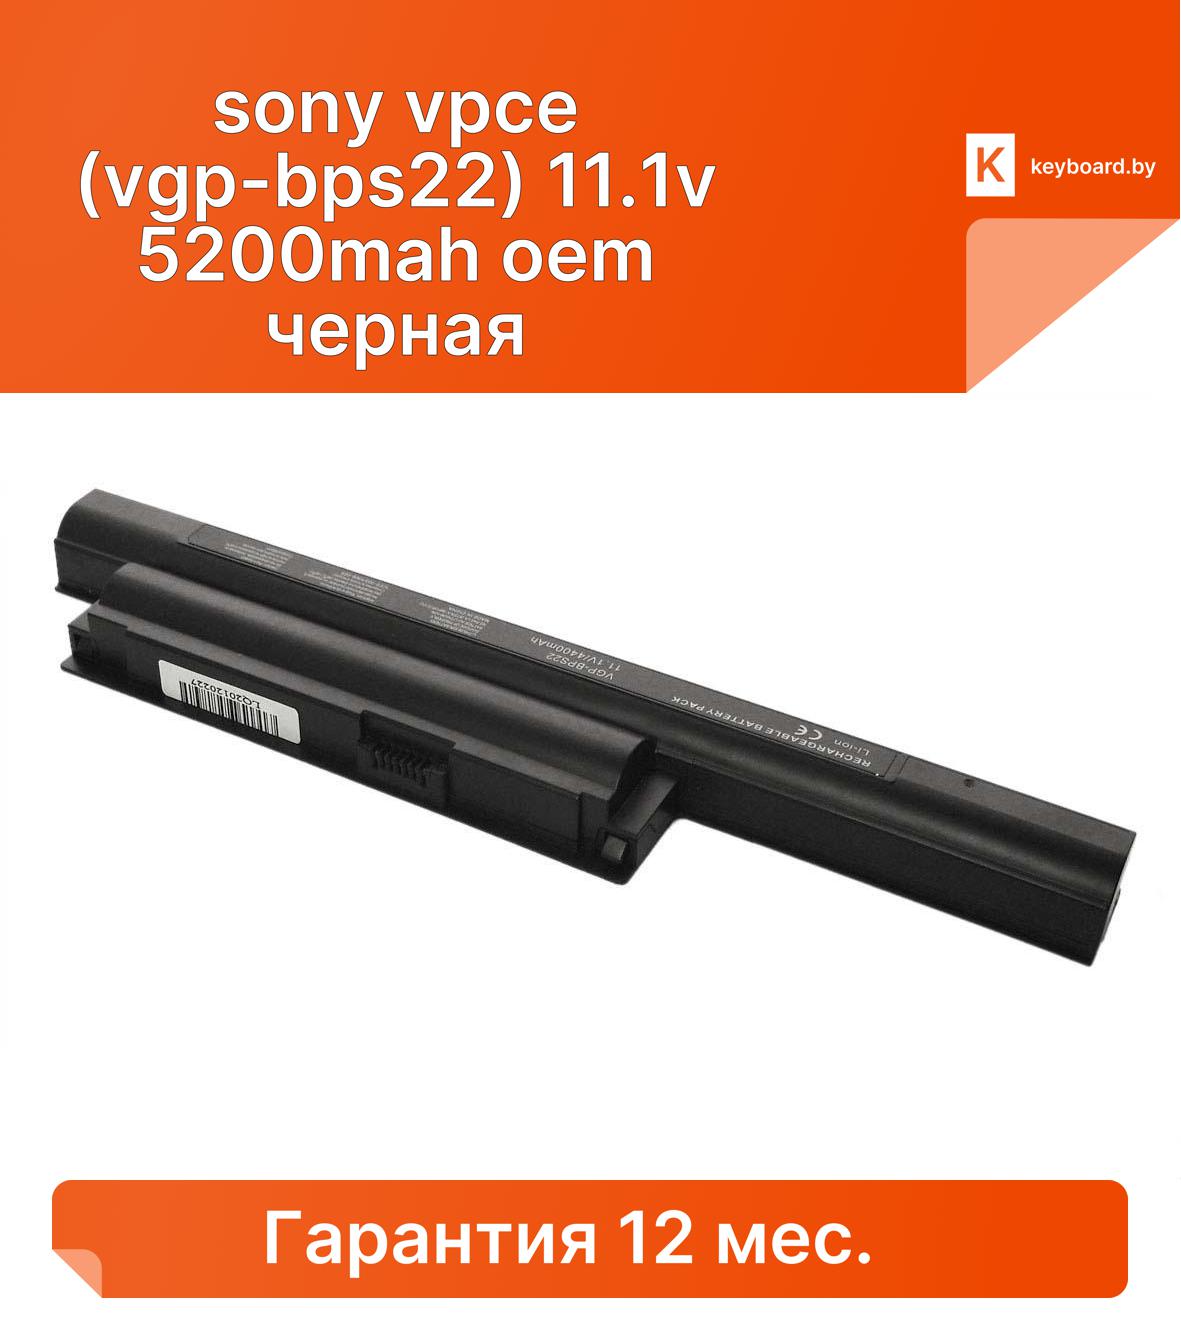 Аккумуляторная батарея для ноутбука sony vpce (vgp-bps22) 11.1v 5200mah oem черная